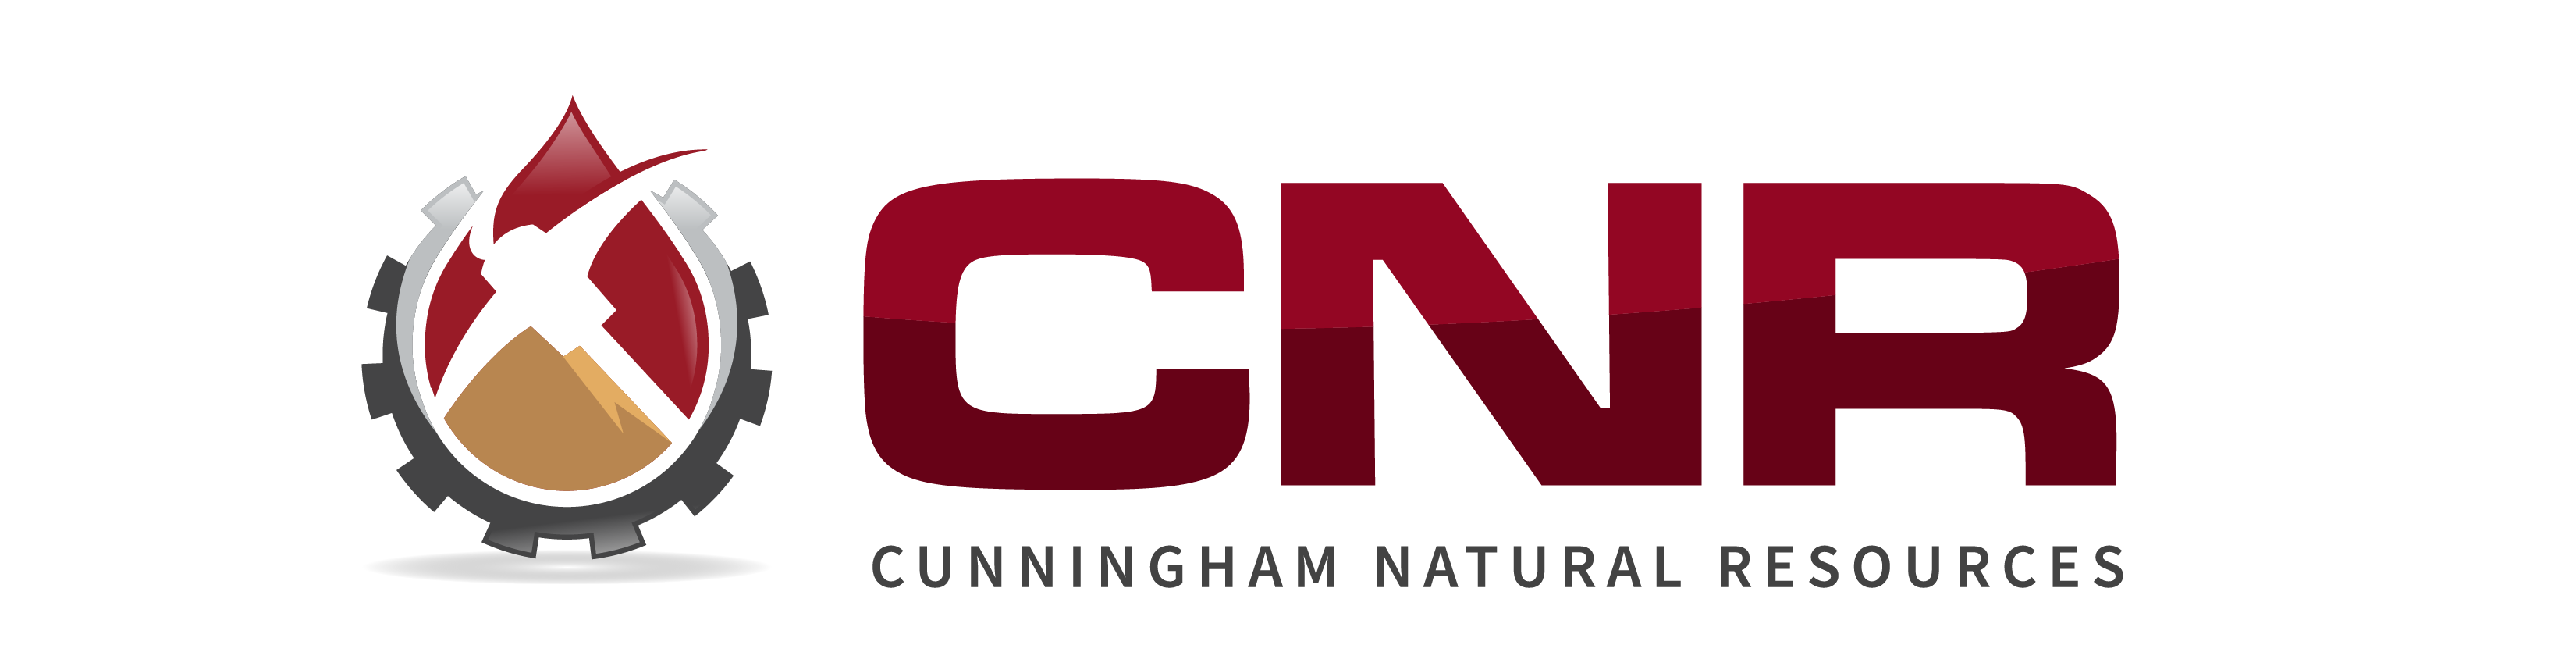 Cunningham Logo final